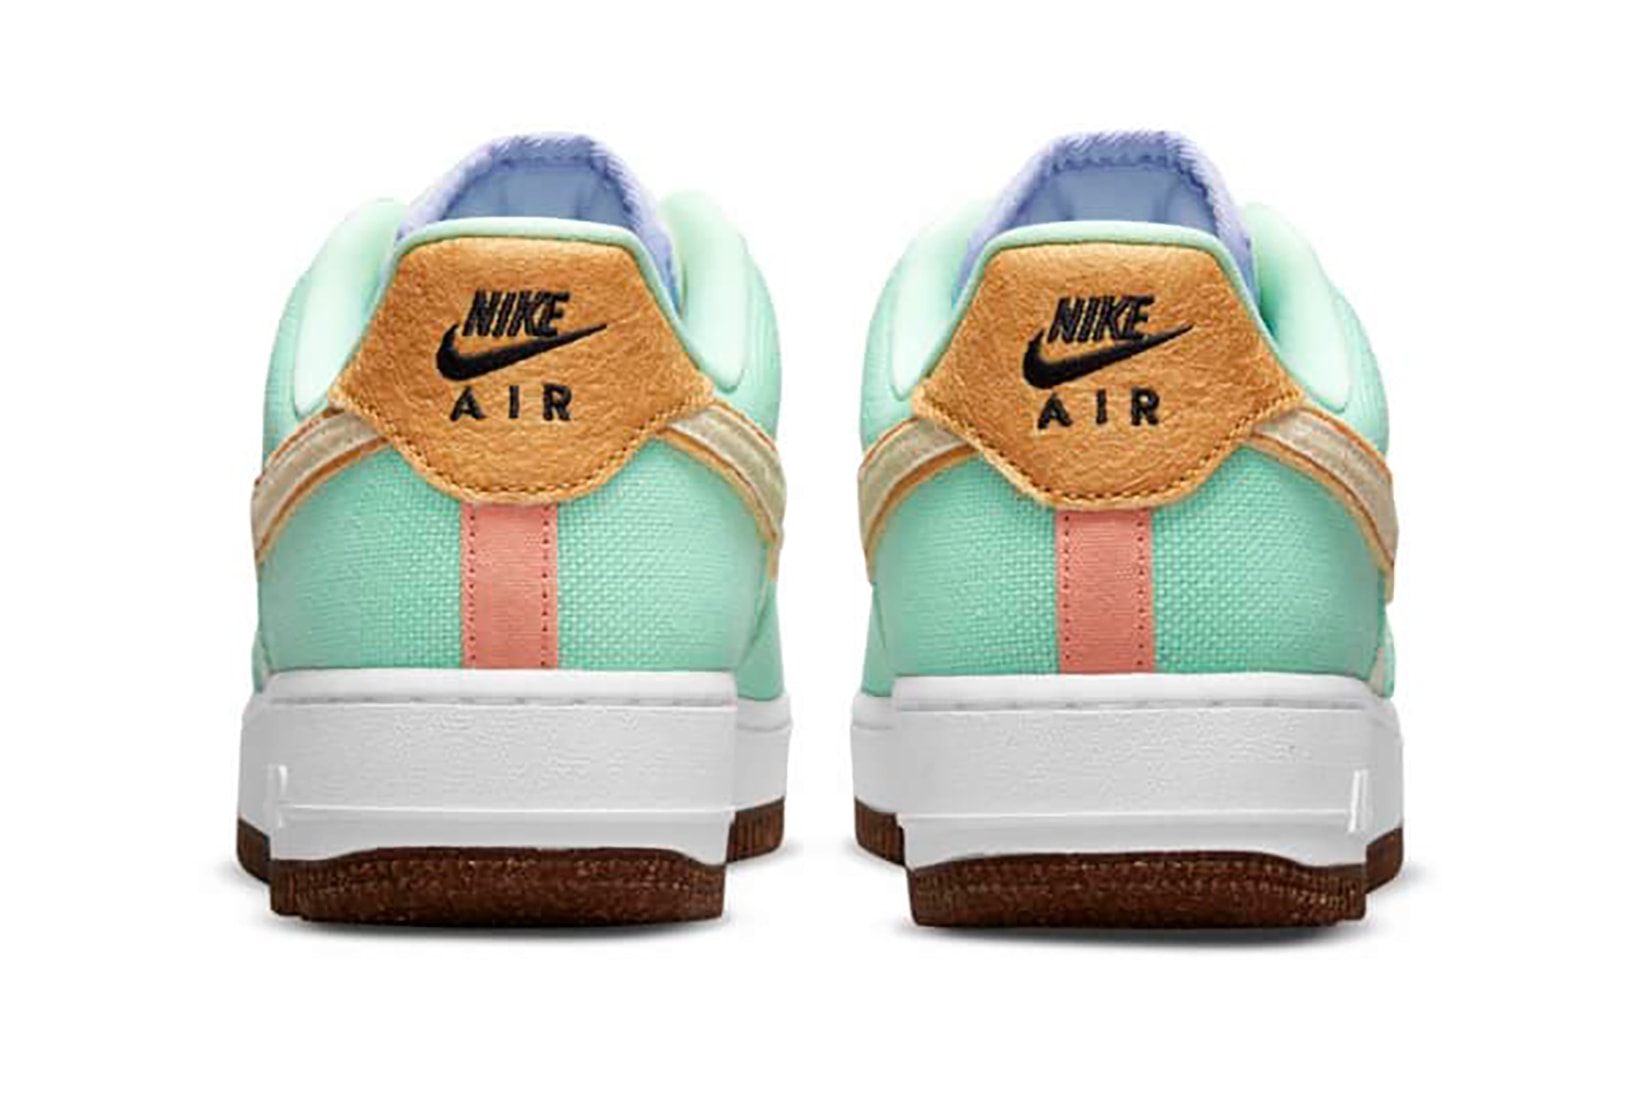 Nike Air Force 1 AF1 Pineapple Canvas Sneakers Shoes Kicks Footwear Teal Blue White Brown Heel